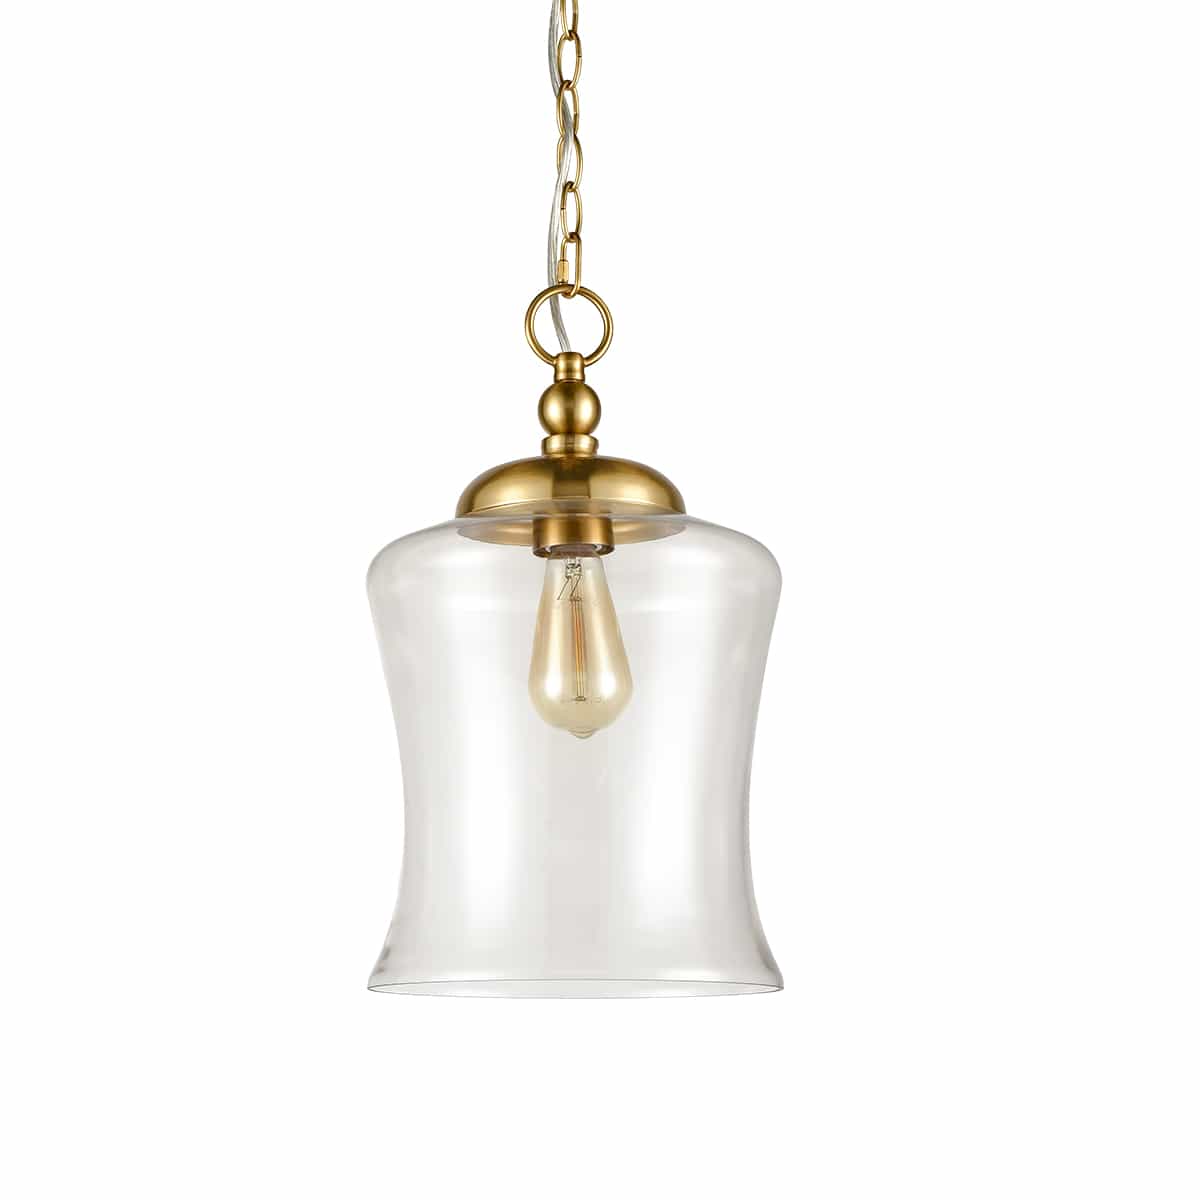 Brass Modern Clear Glass Industrial Pendant Light